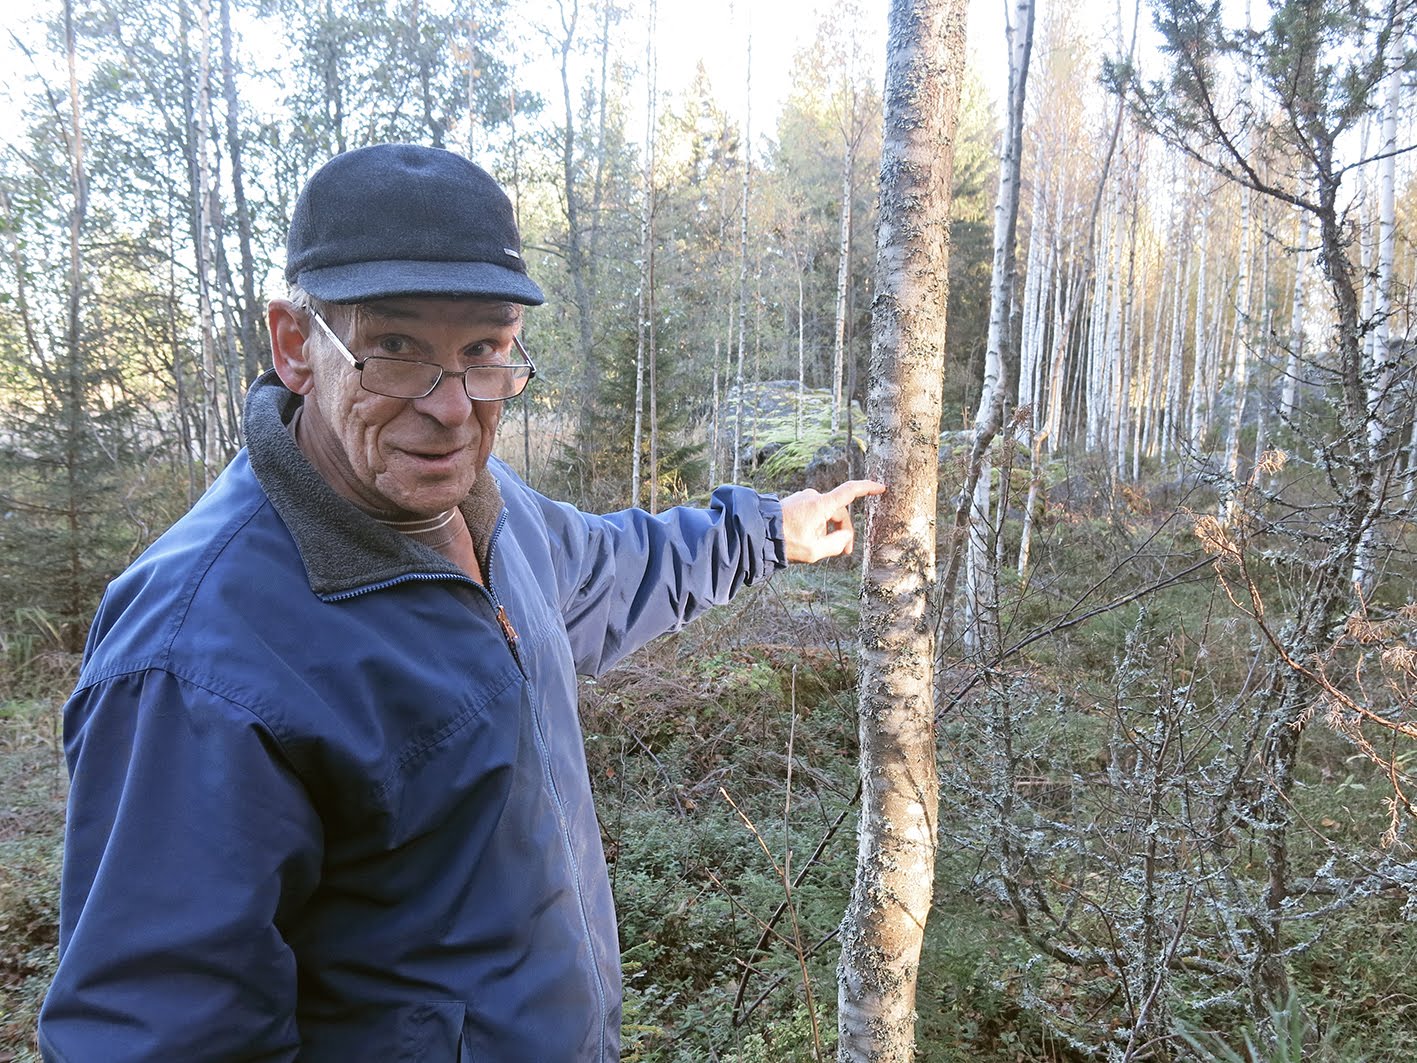 Intervju och studiebesök hos skogsägaren Ralf om Mausurbjörk och skogsbruk